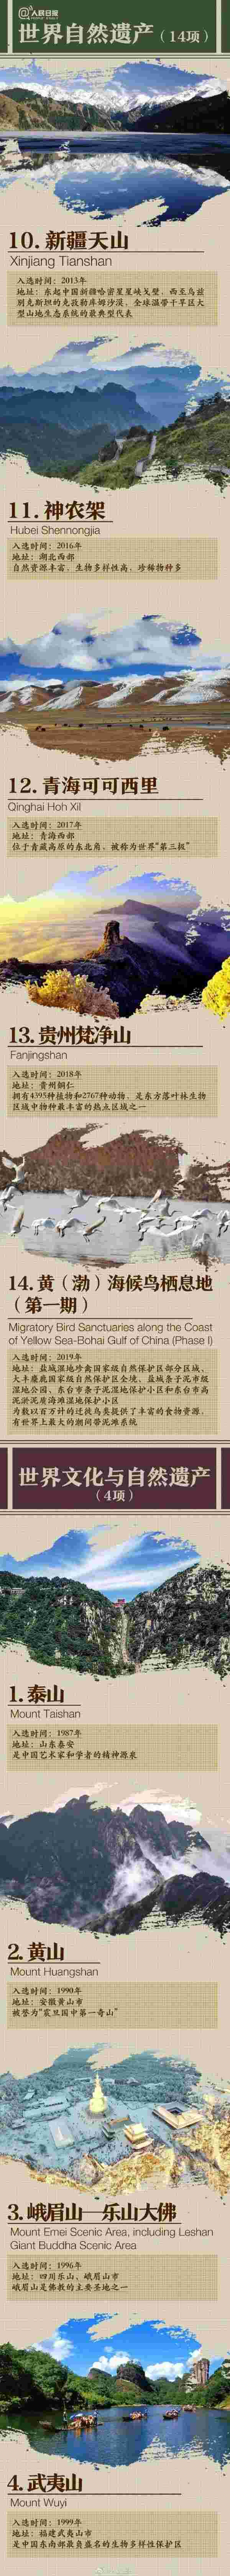 中国的世界遗产名录（中国55项世界遗产图鉴） 第6张